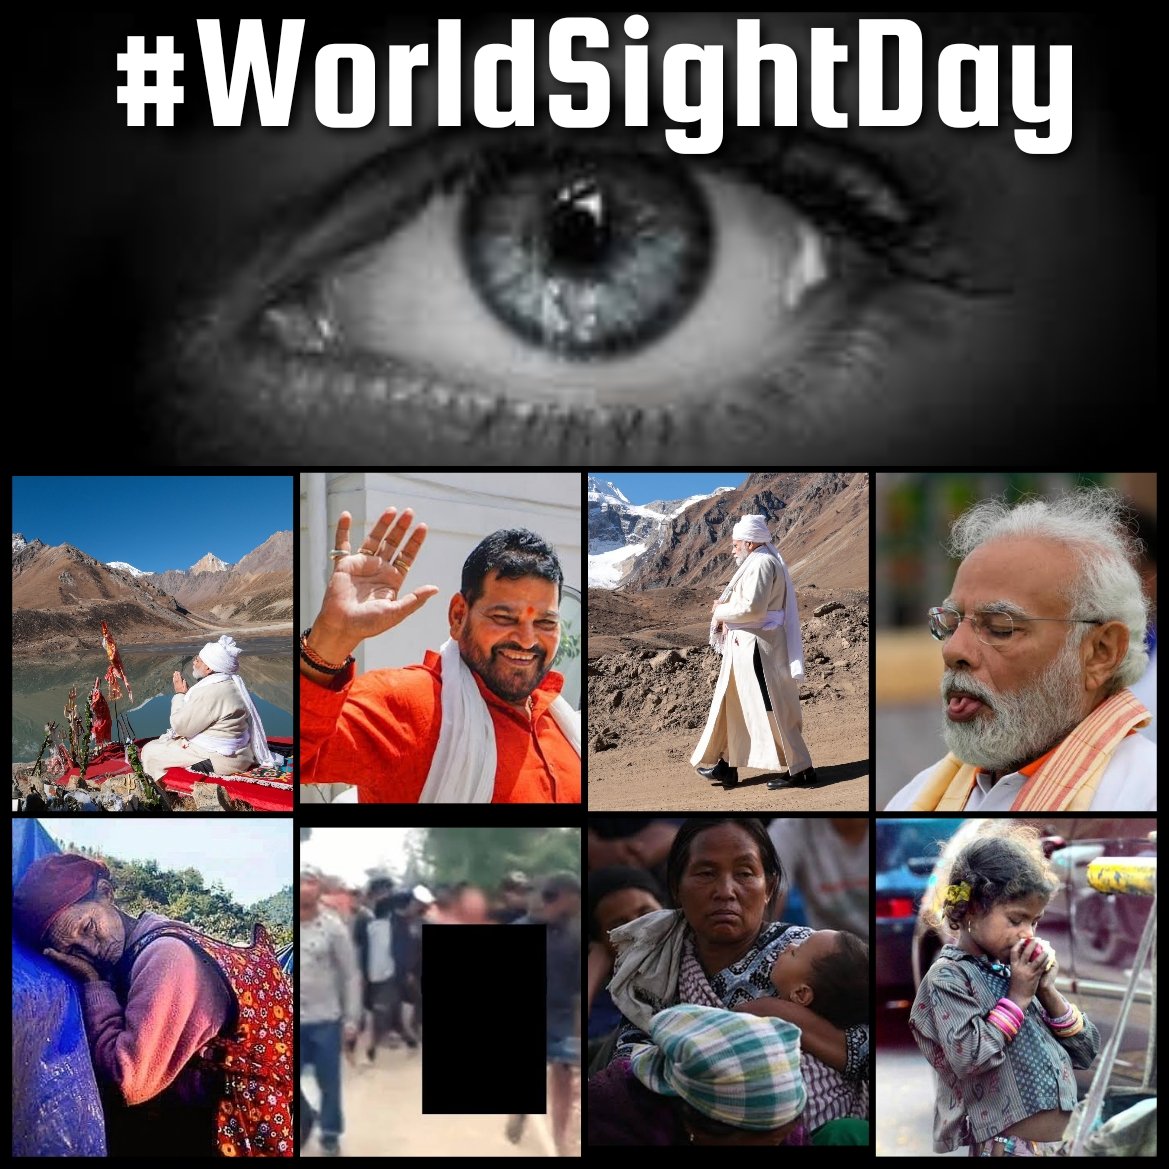 𝐘𝐞𝐬𝐭𝐞𝐫𝐝𝐚𝐲, 𝙸𝚗𝚍𝚒𝚊 𝙾𝚋𝚜𝚎𝚛𝚟𝚎𝚍 𝚆𝚘𝚛𝚕𝚍 𝚂𝚒𝚐𝚑𝚝 𝙳𝚊𝚢

#WorldSightDay #ManipurViolence #ManipurCrisis #HungerIndex #ModiInUttarakhand